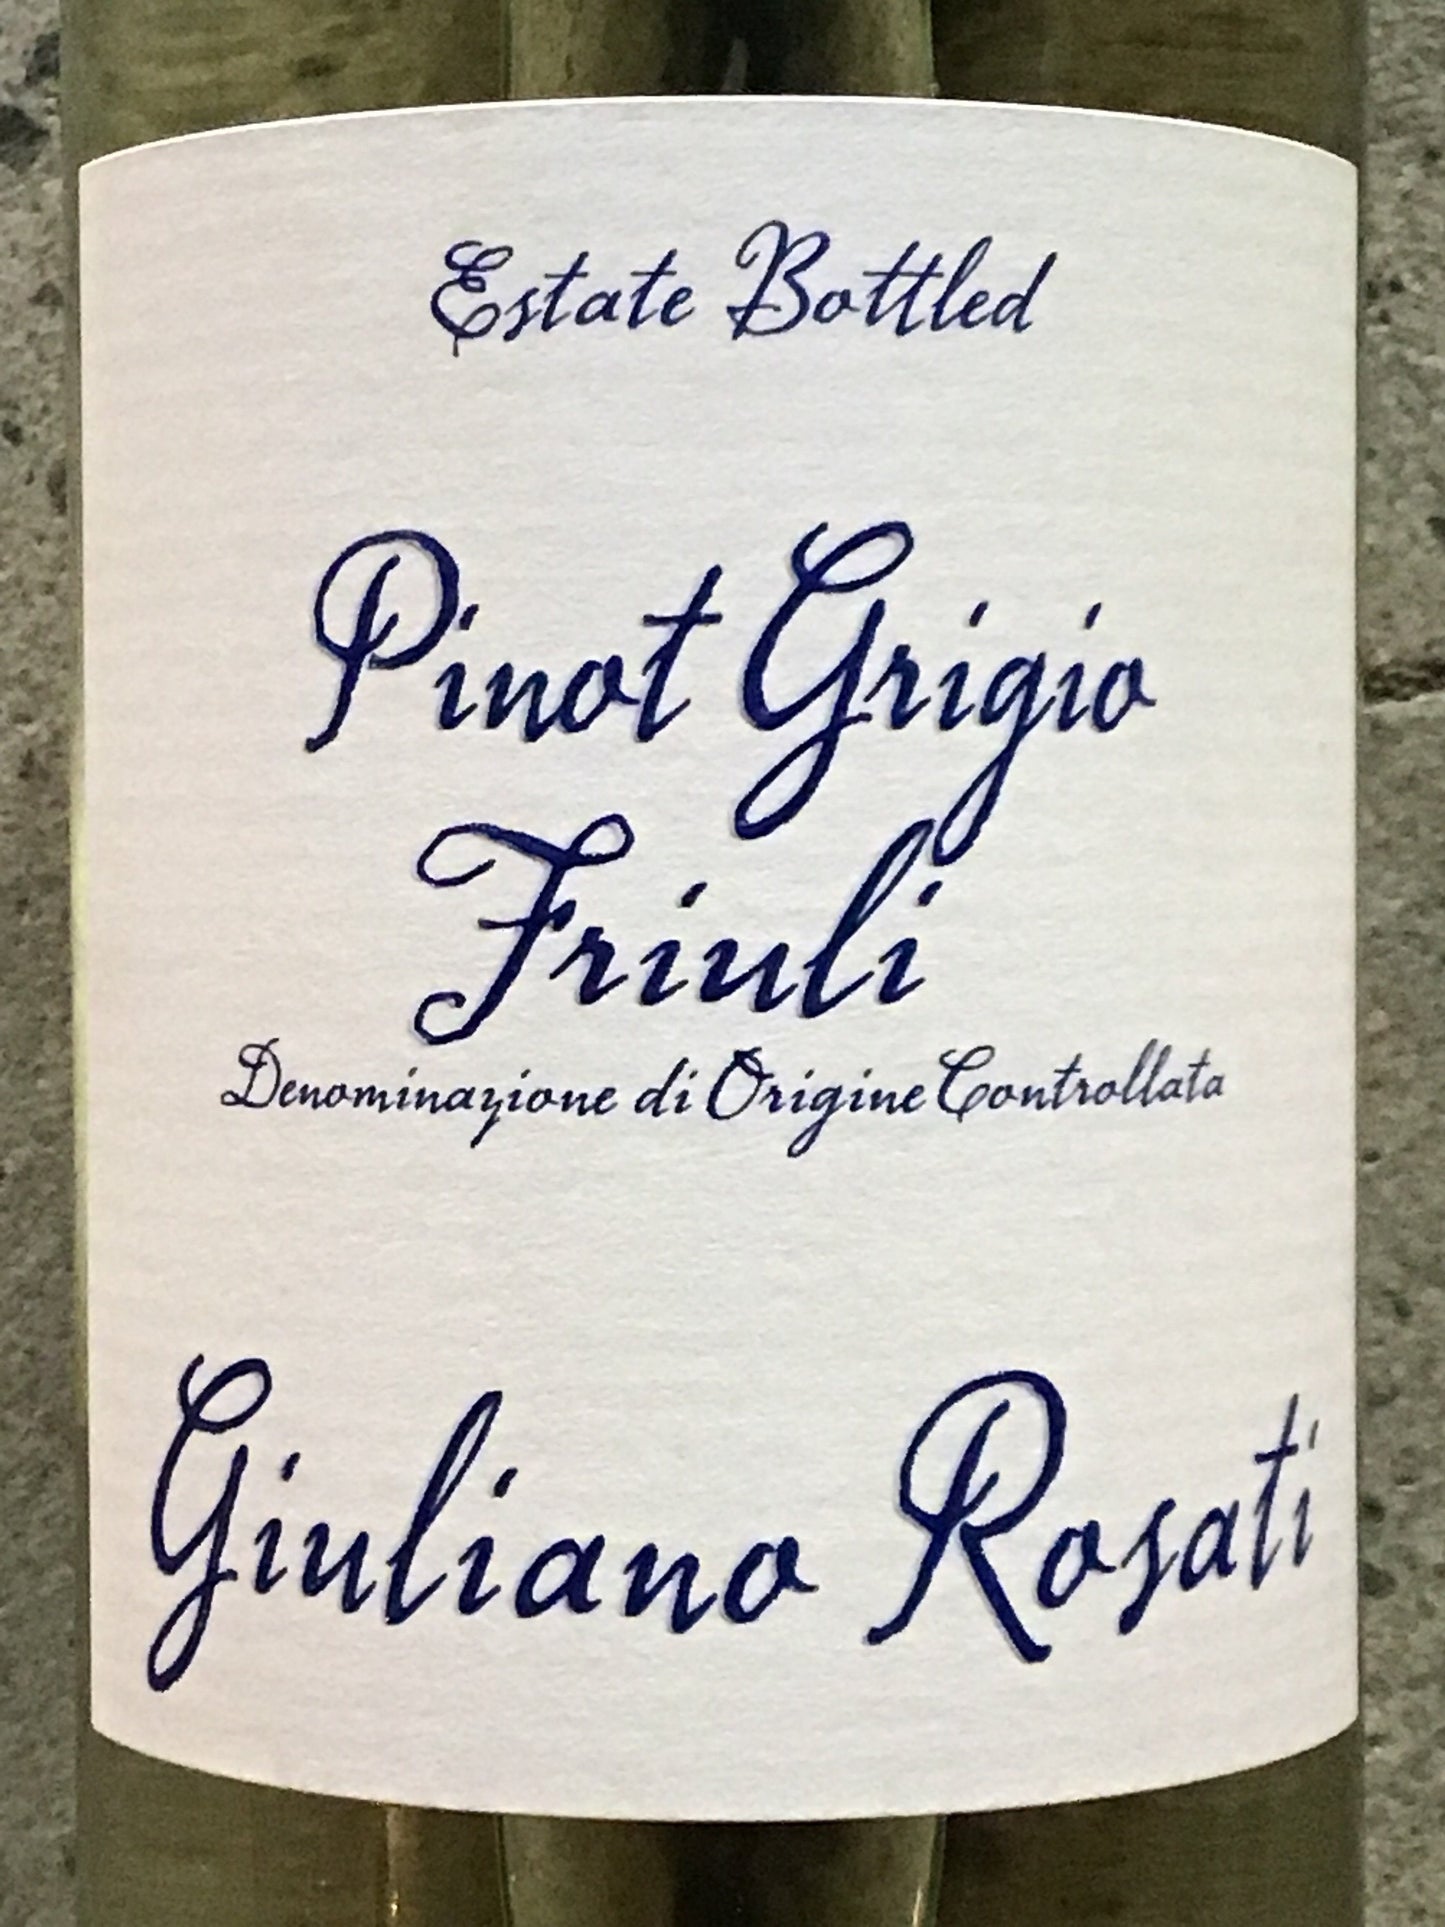 Giuliano Rosati - Pinot Grigio - Friuli-Venezia